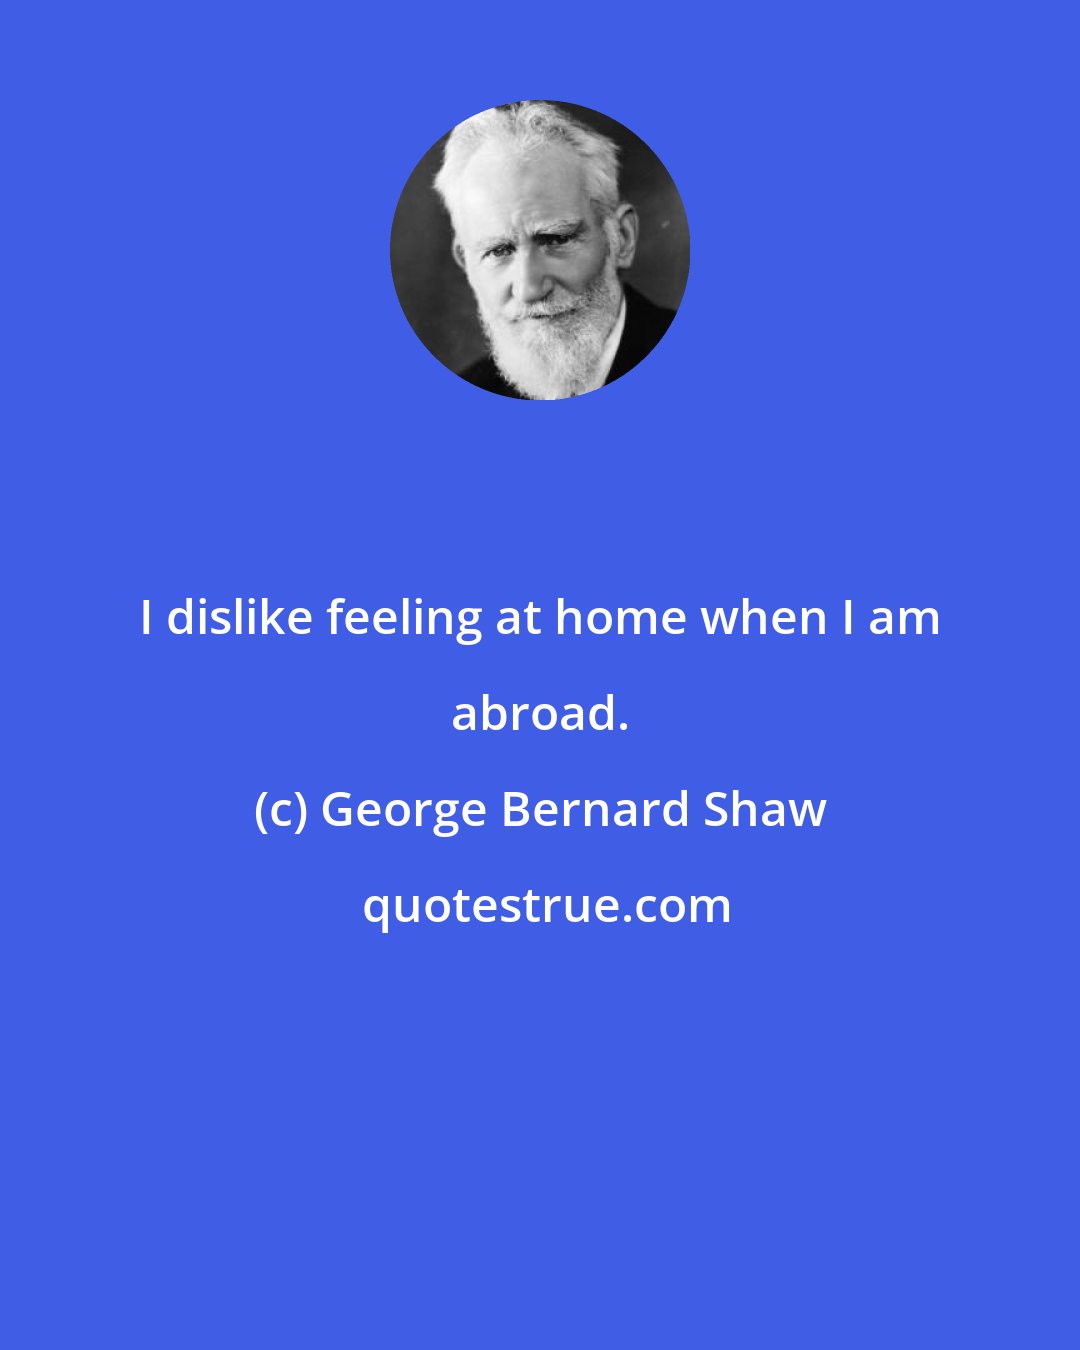 George Bernard Shaw: I dislike feeling at home when I am abroad.